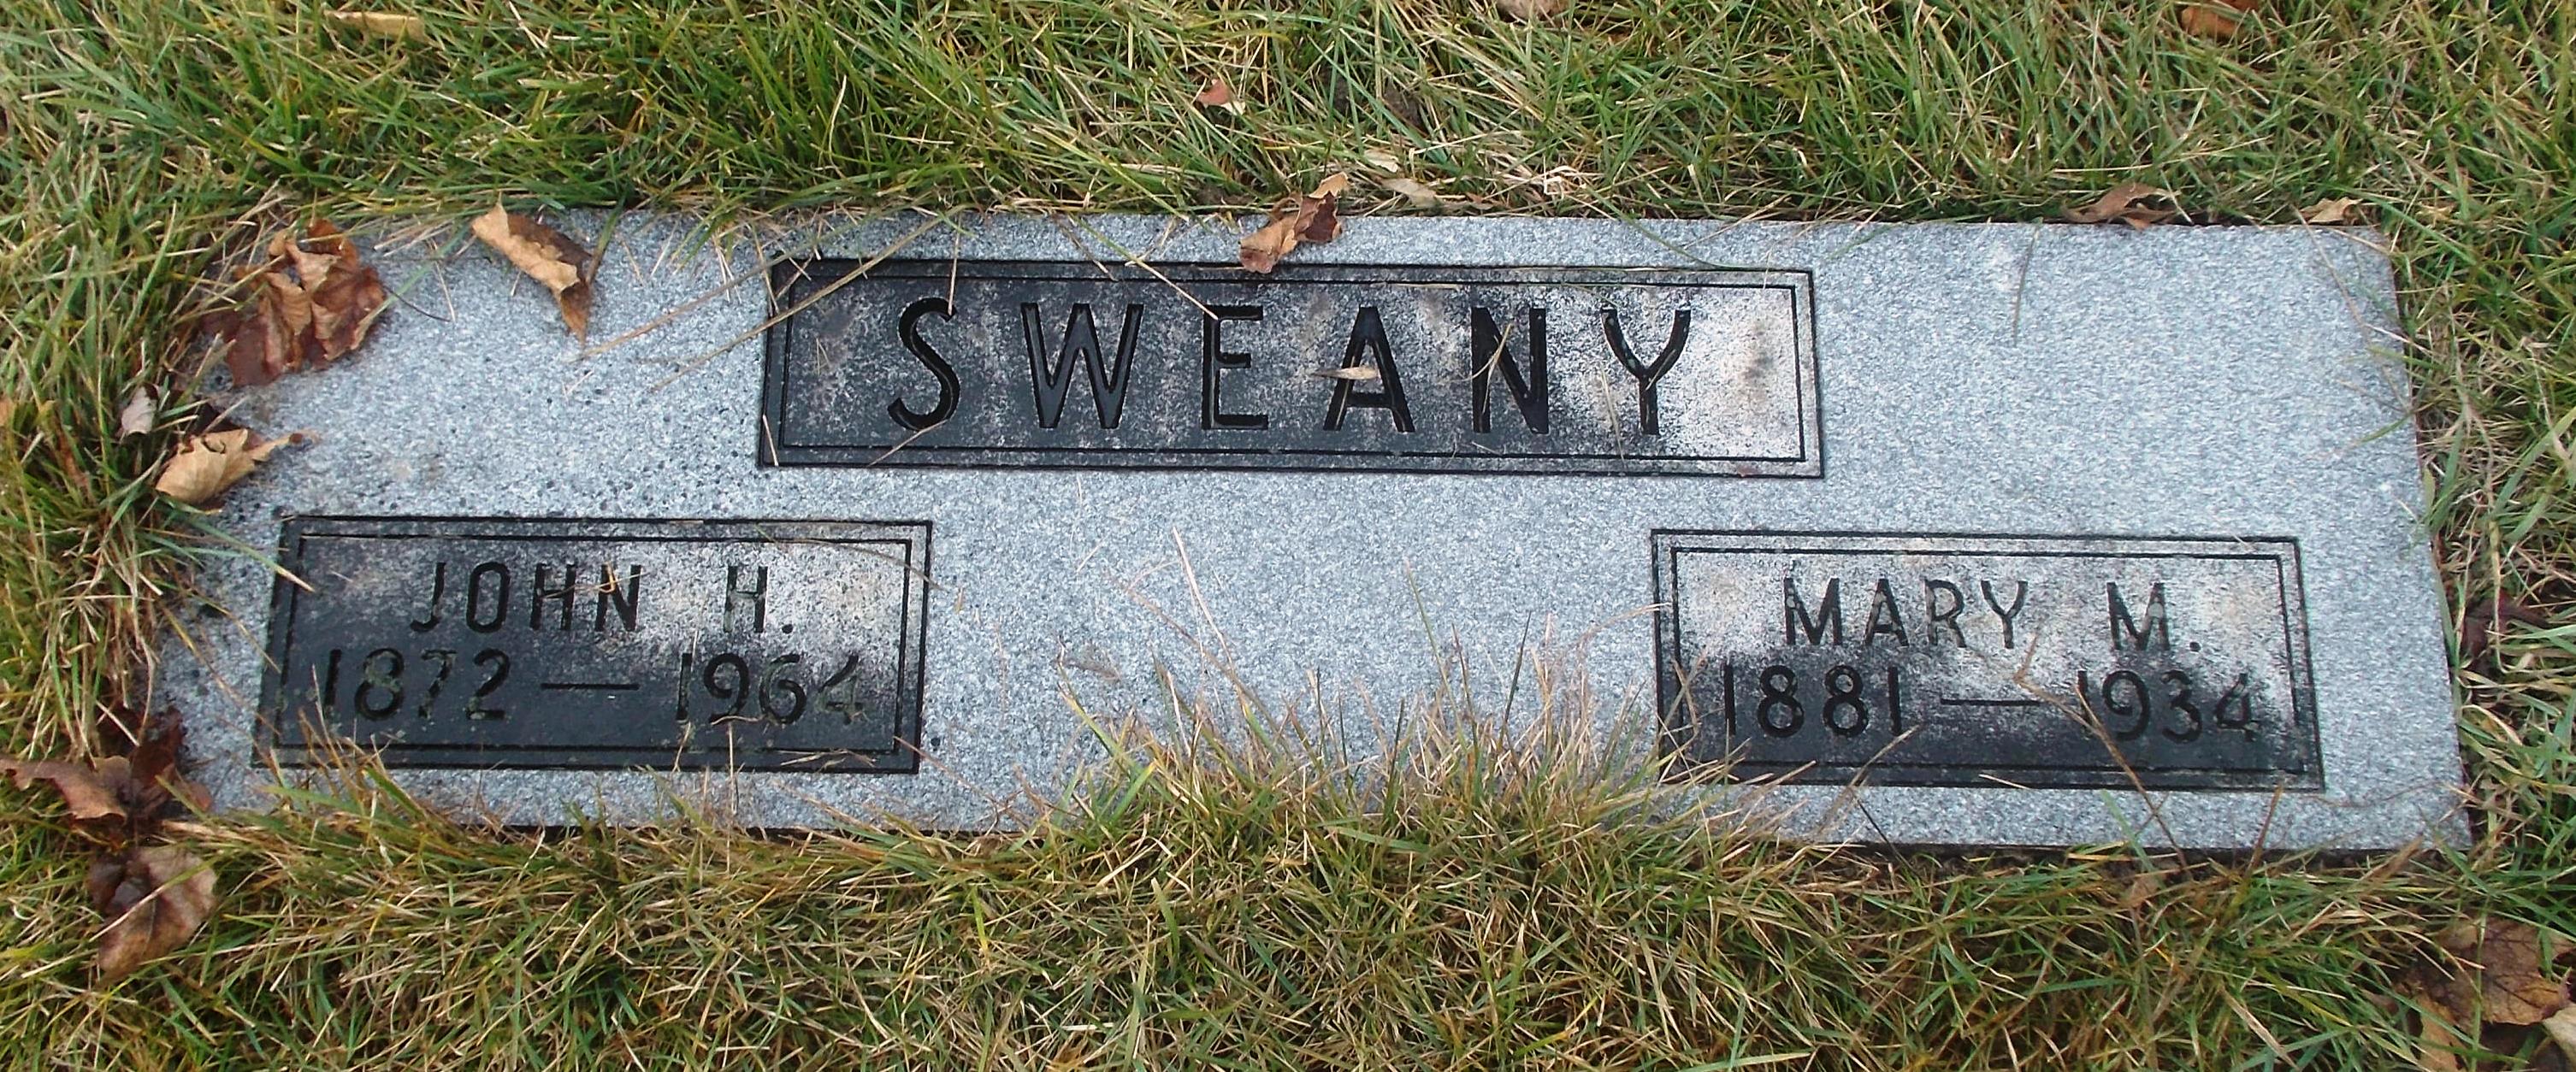 Mary M Sweany